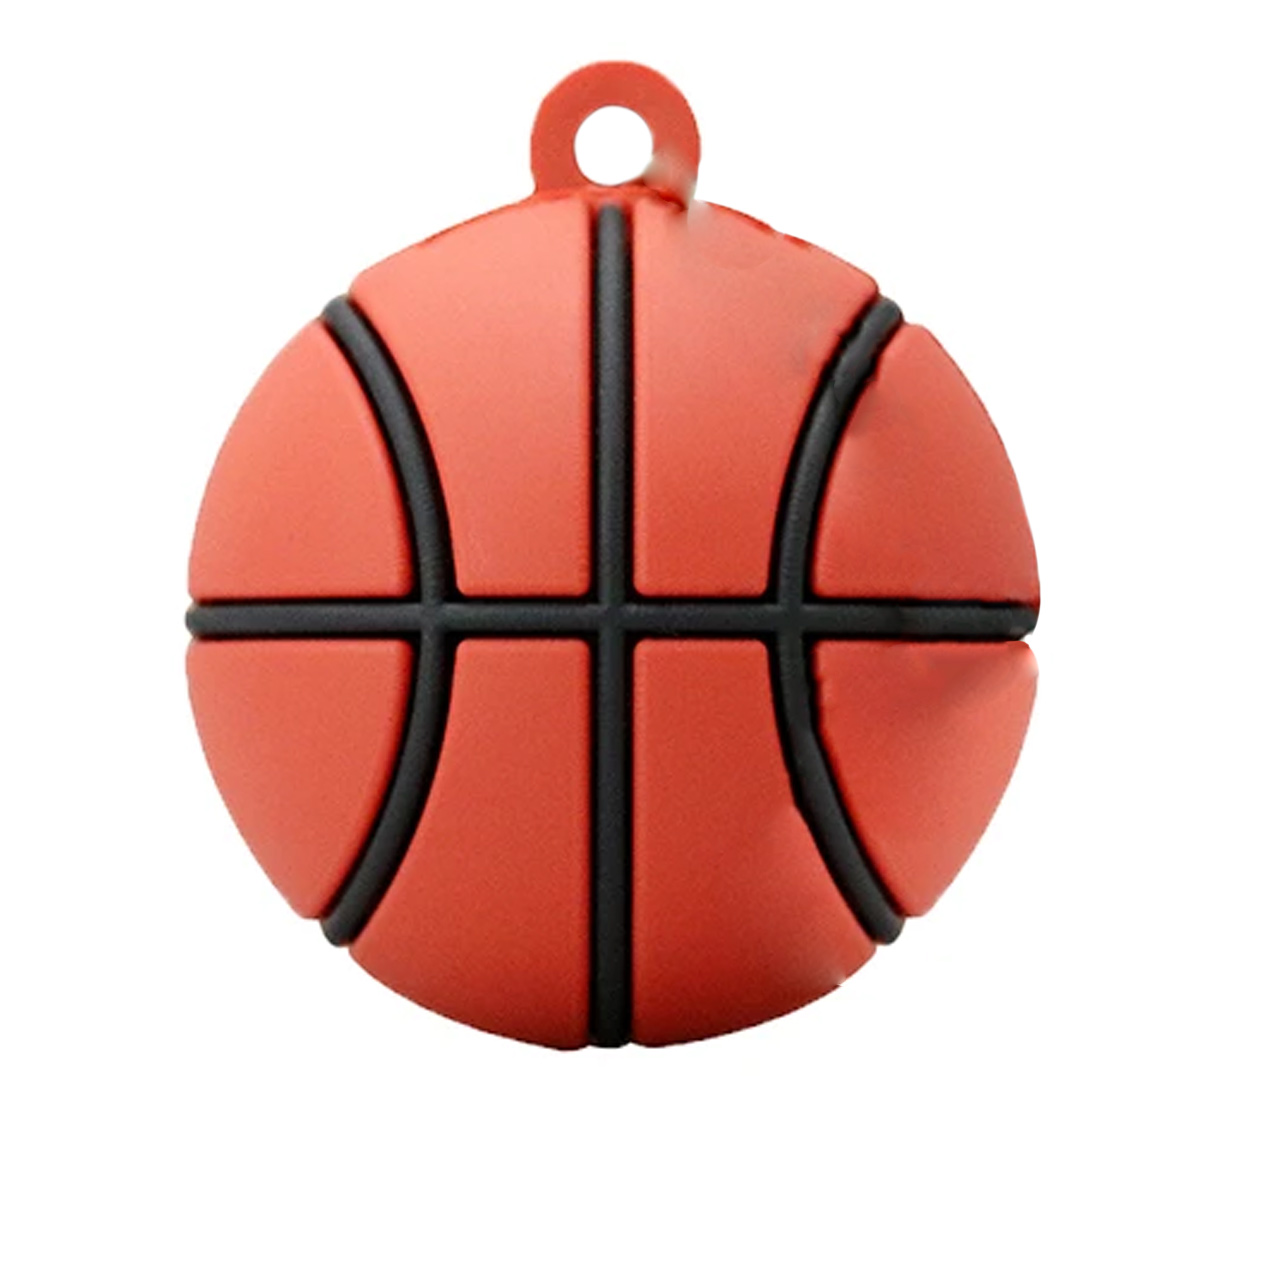 فلش مموری طرح توپ basketball مدل DPL1115 ظرفیت 16 گیگابایت